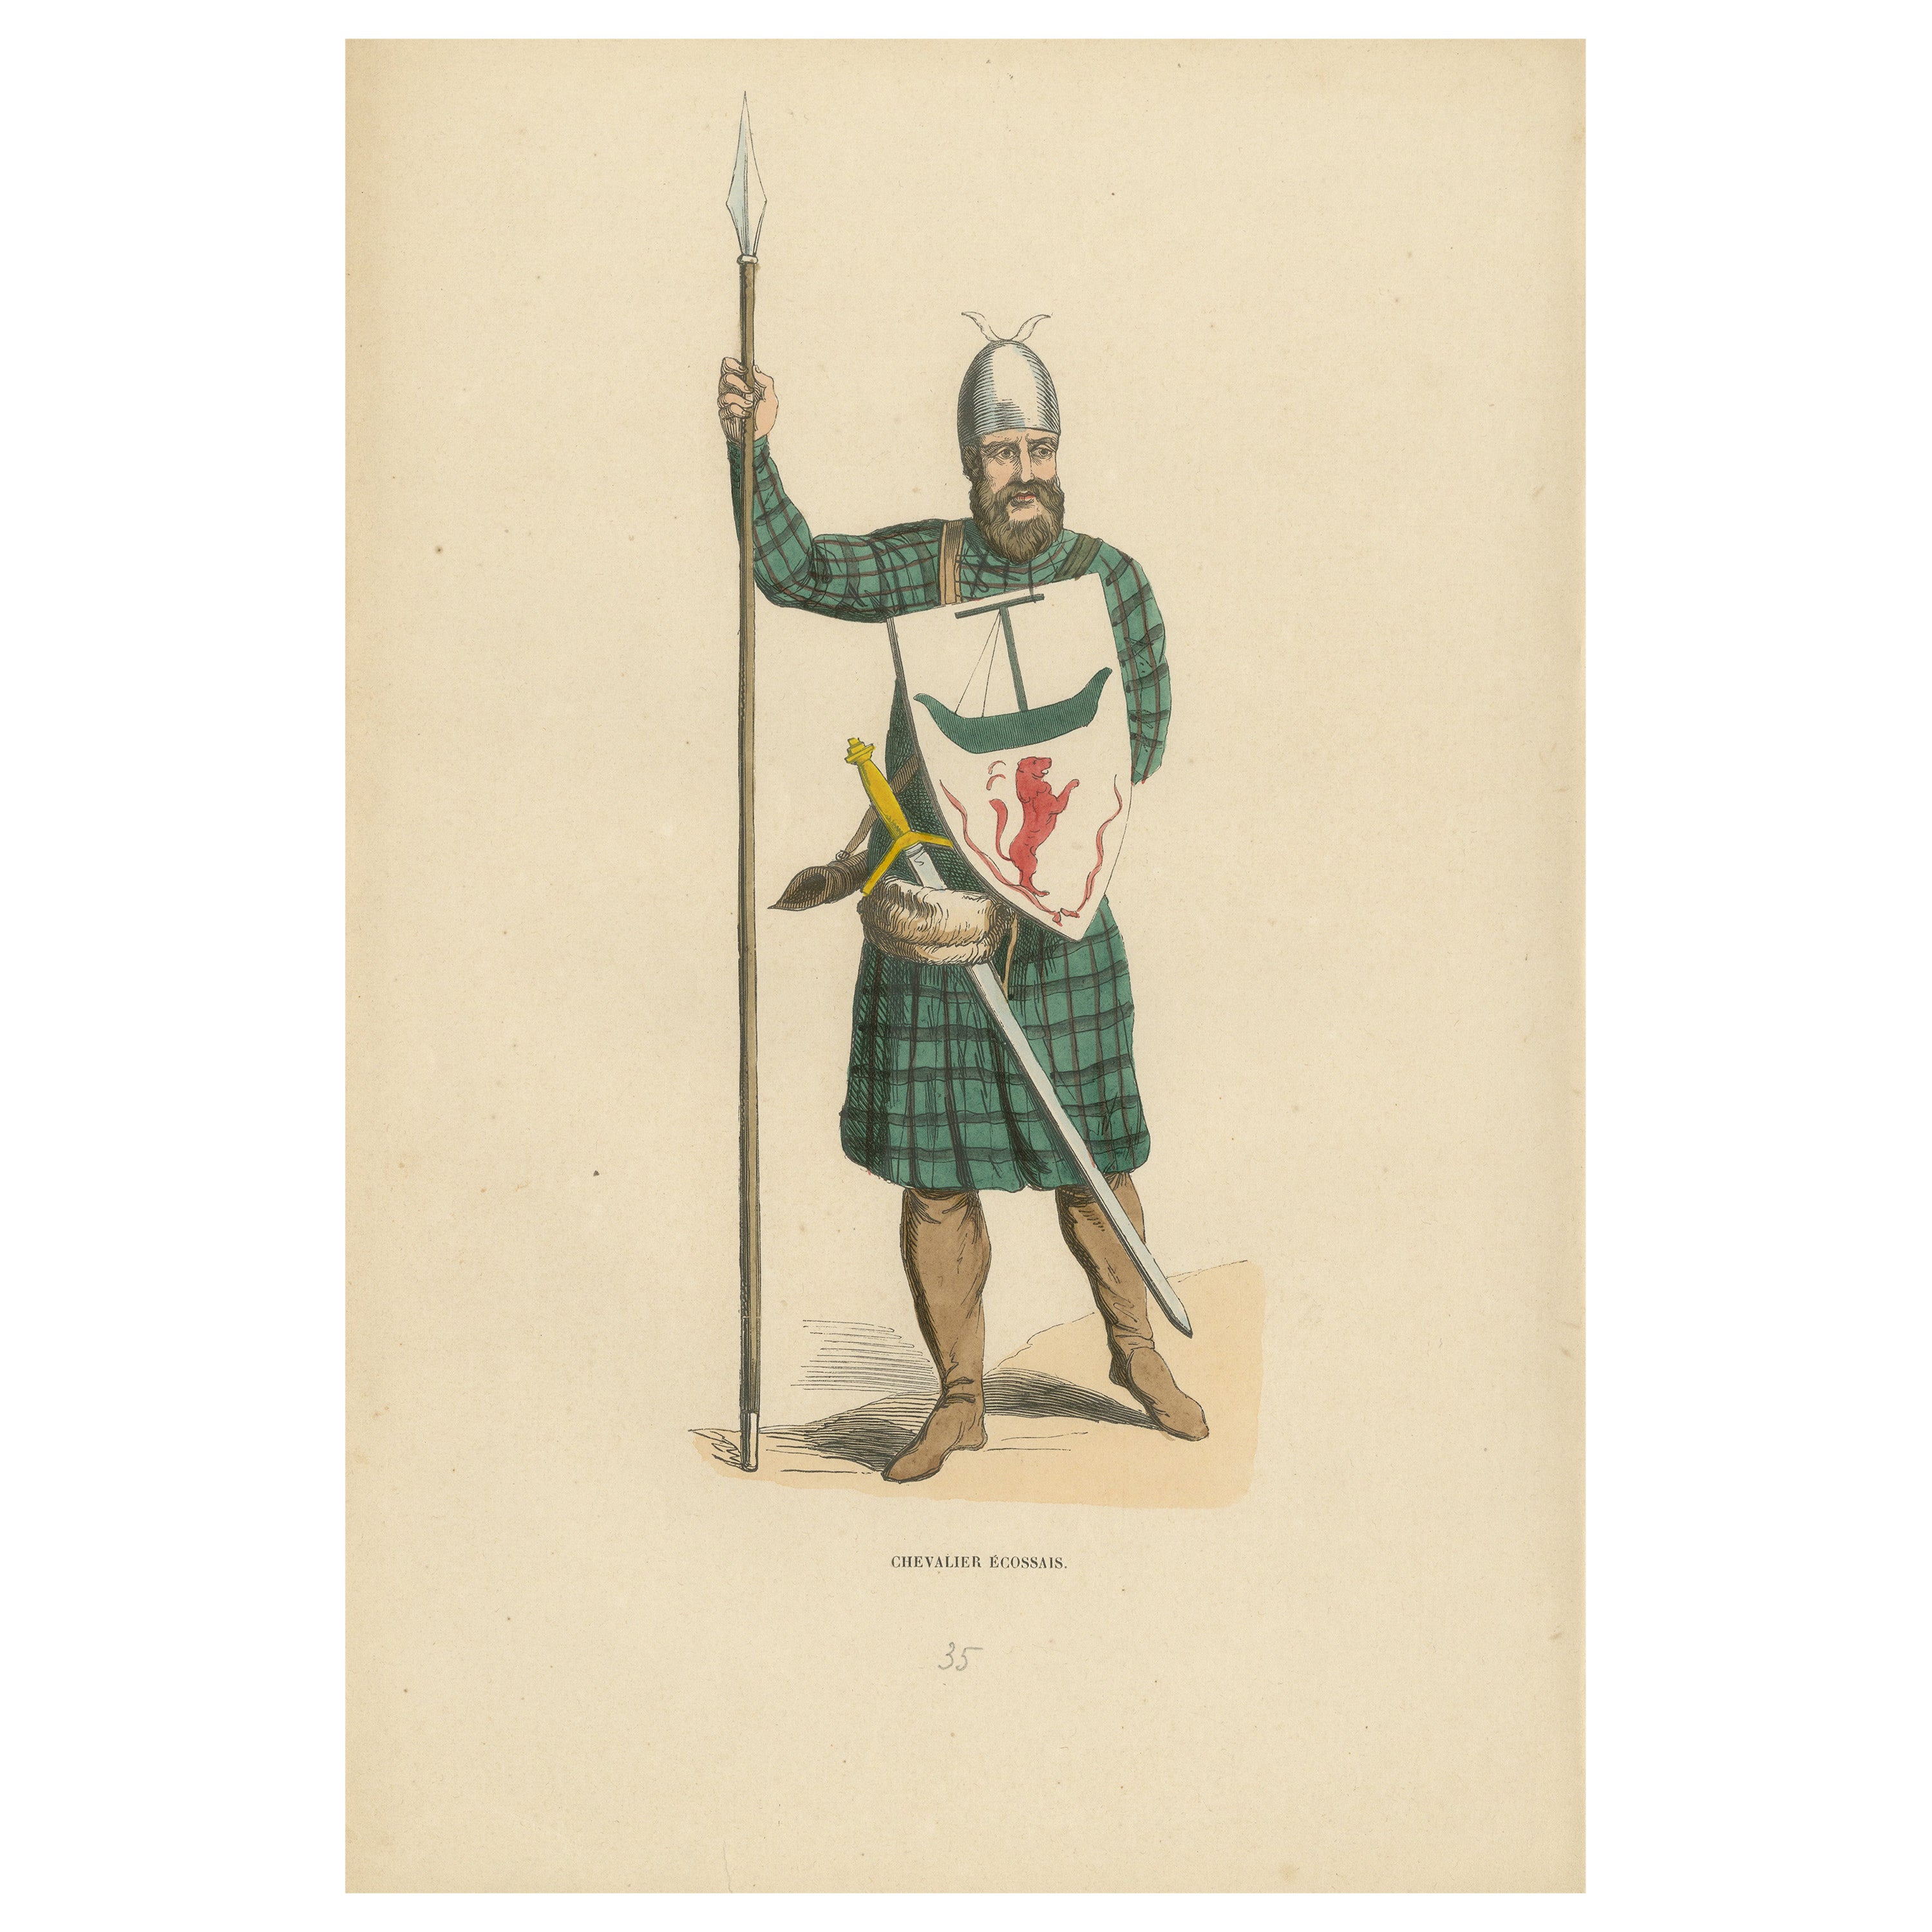 Scottish Knight in Tartan Attire with Heraldic Shield, Costume Di Moyen Age 1847